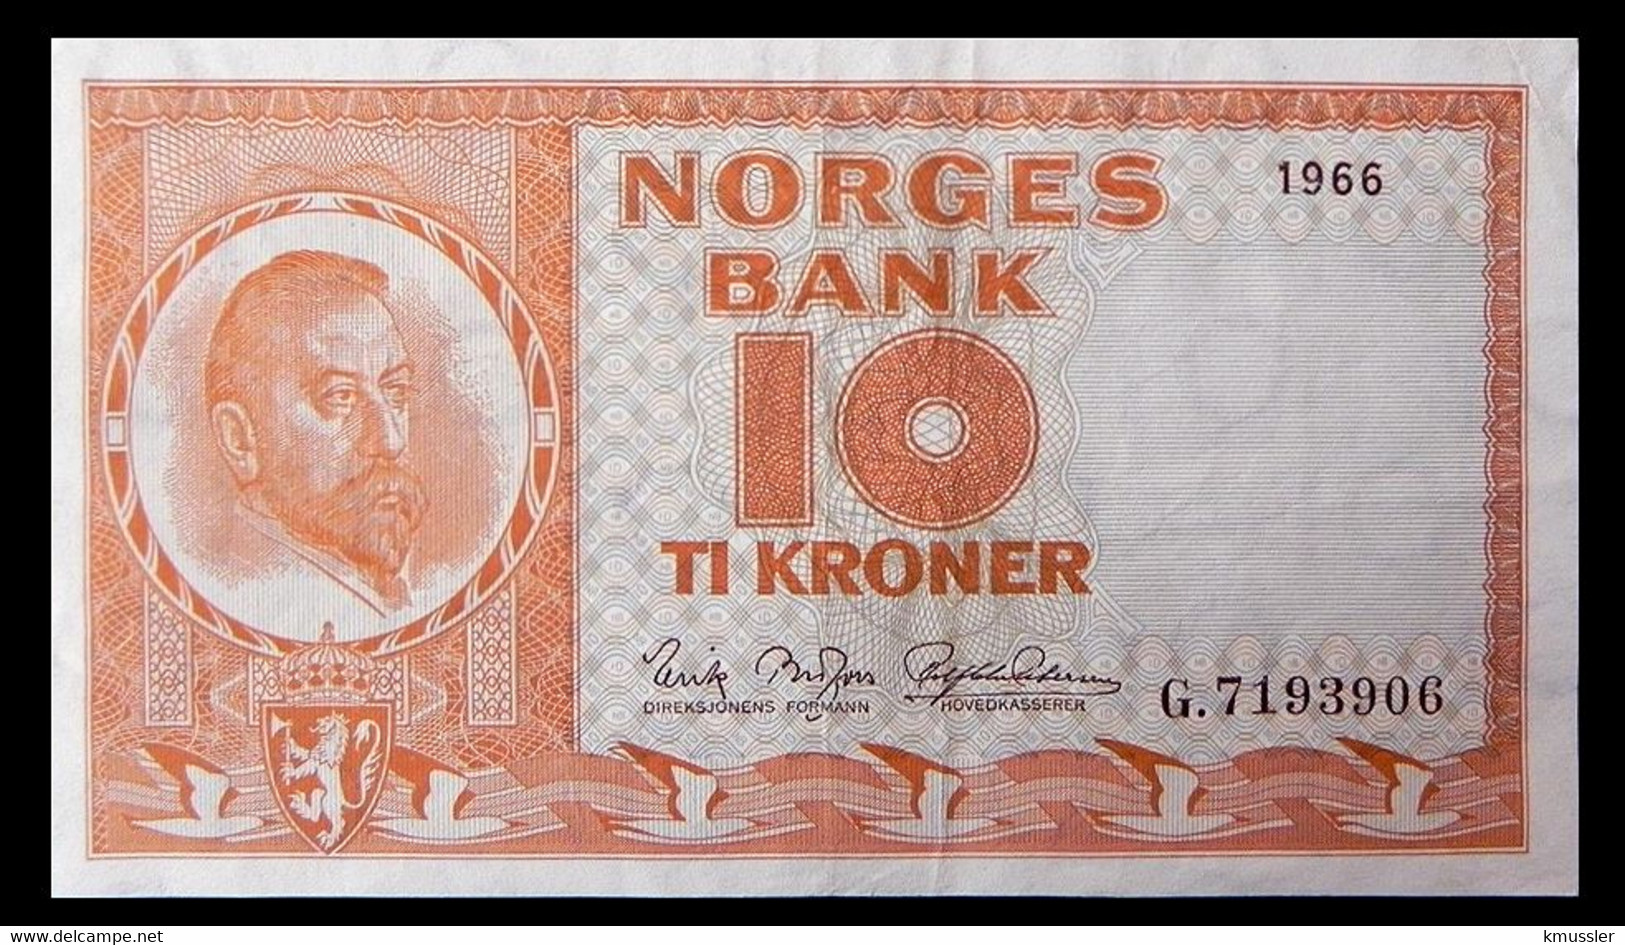 # # # Banknote Norwegen (Norway) 10 Kroner 1966 # # # - Norwegen